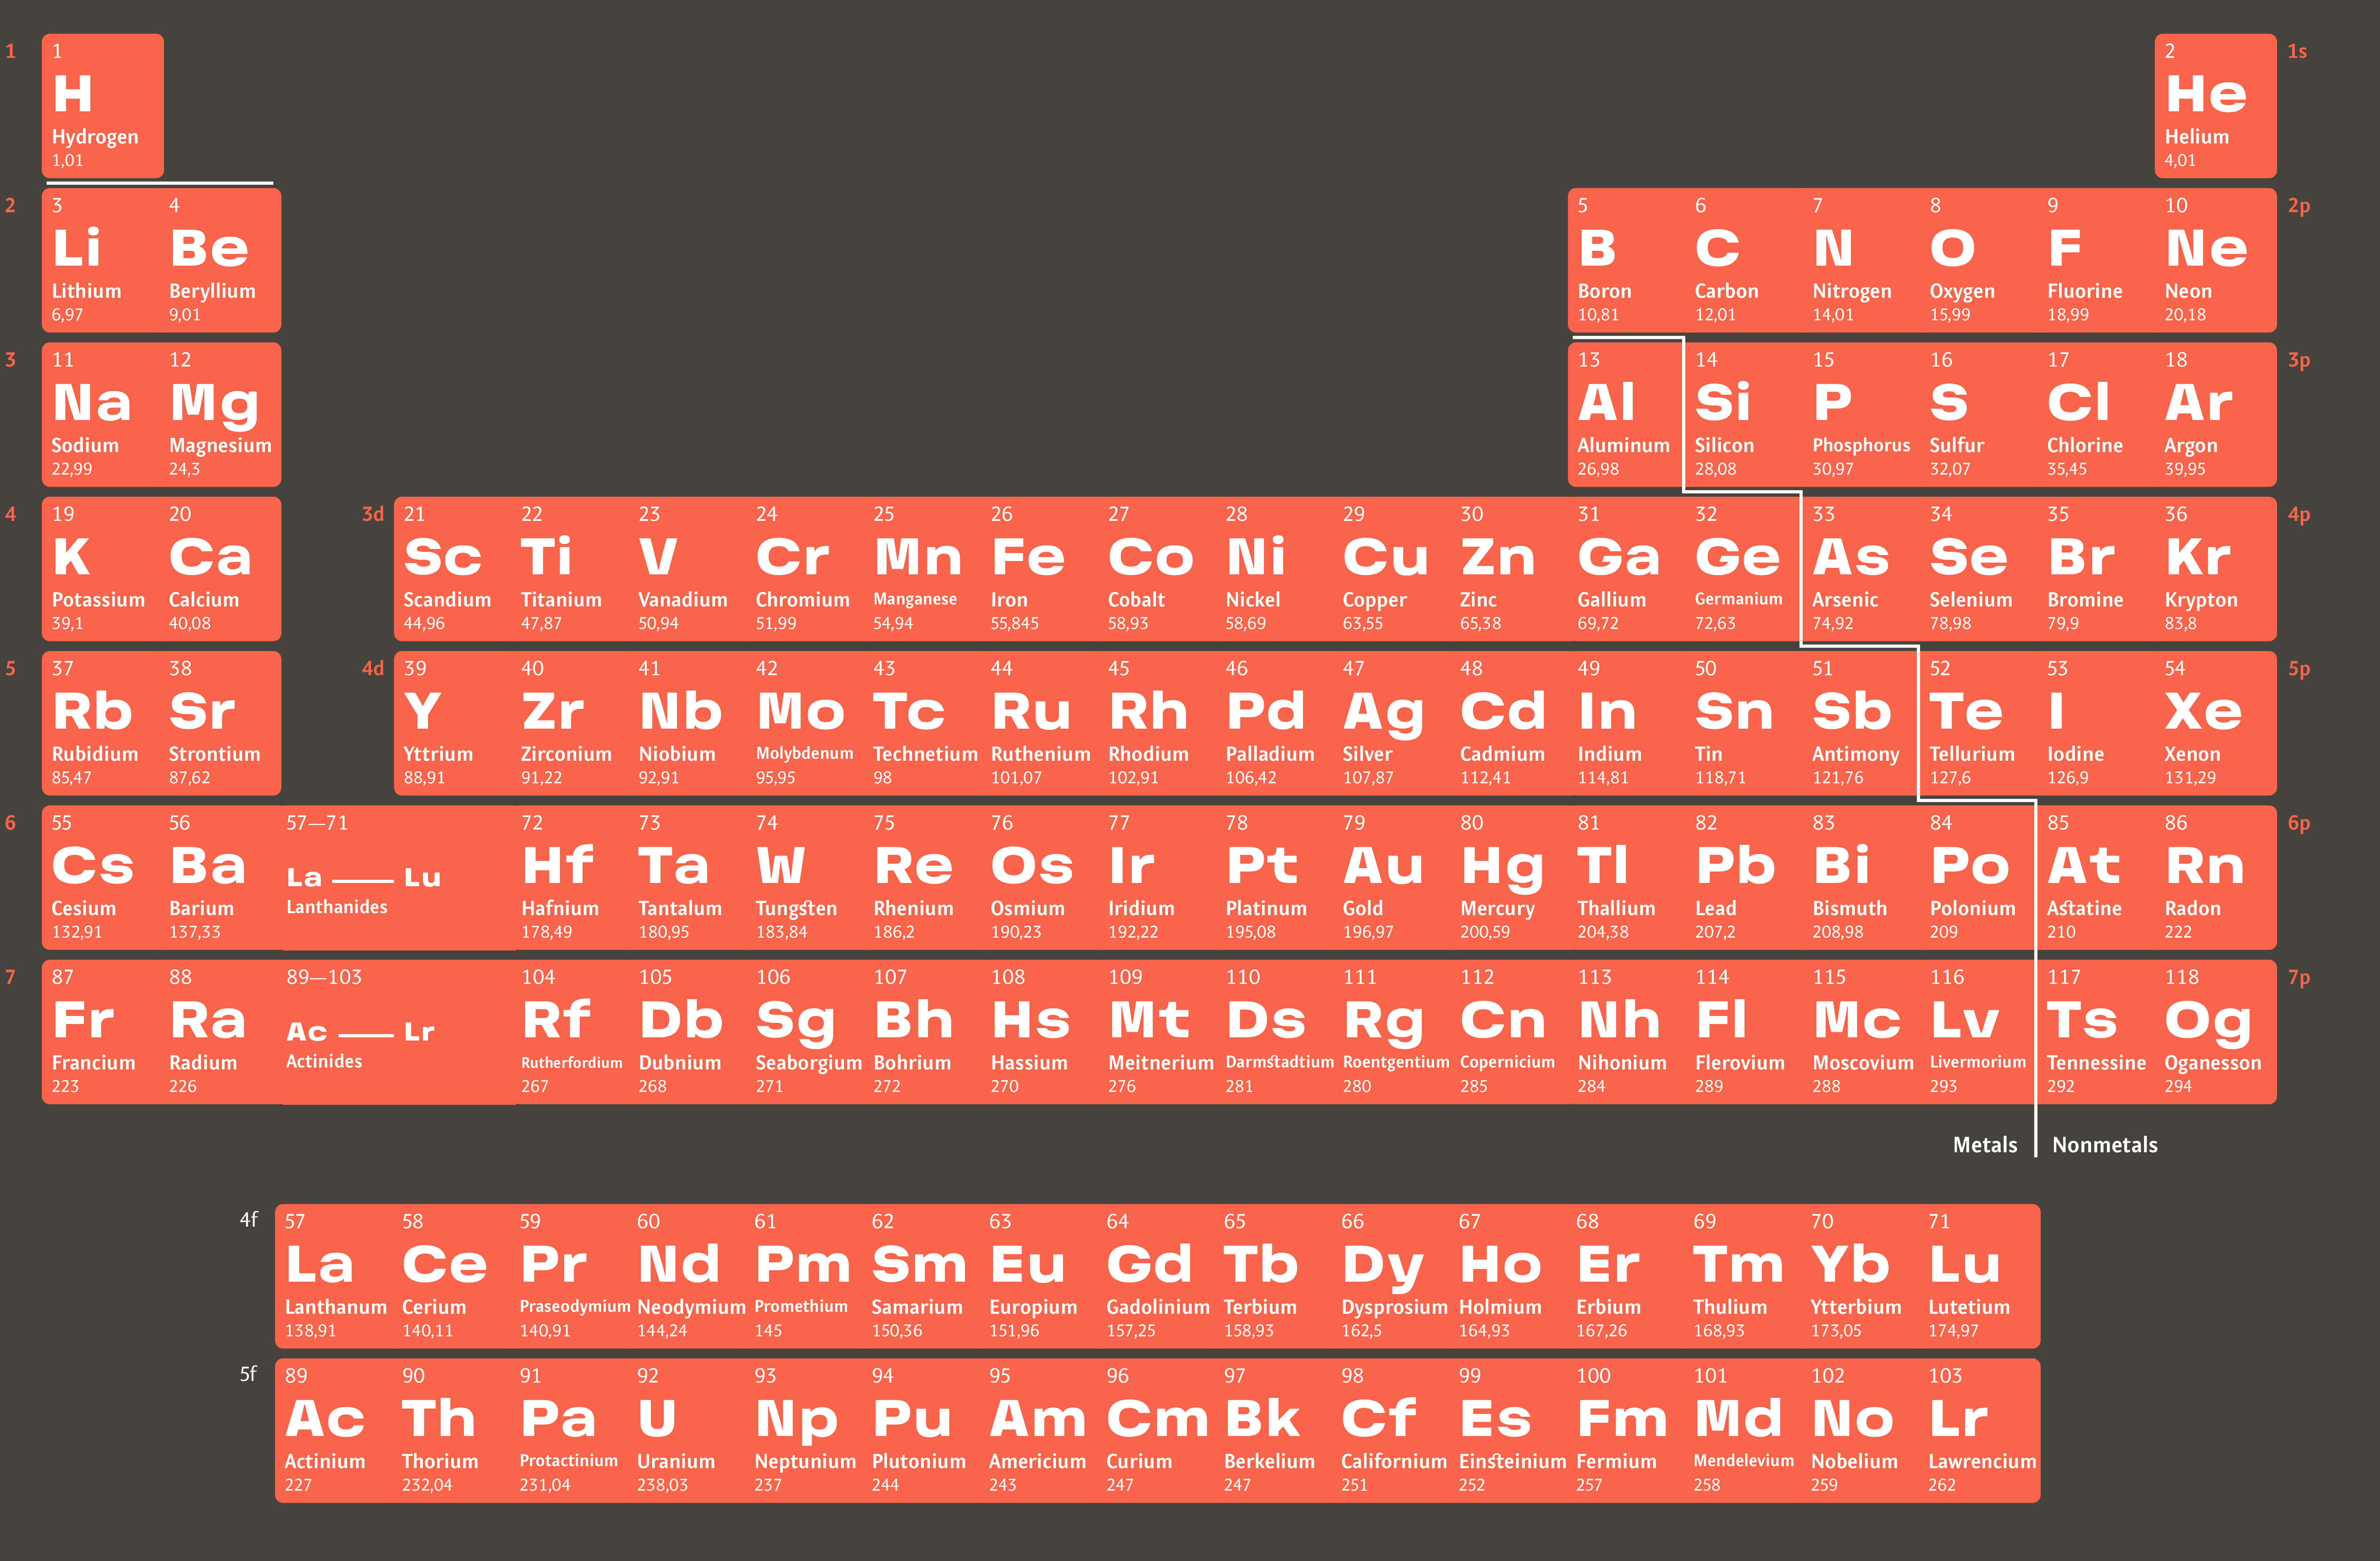 Последний элемент менделеева. Современная таблица Менделеева 118 элементов. Периодическая таблица Артемия Лебедева. Короткопериодная таблица Менделеева.